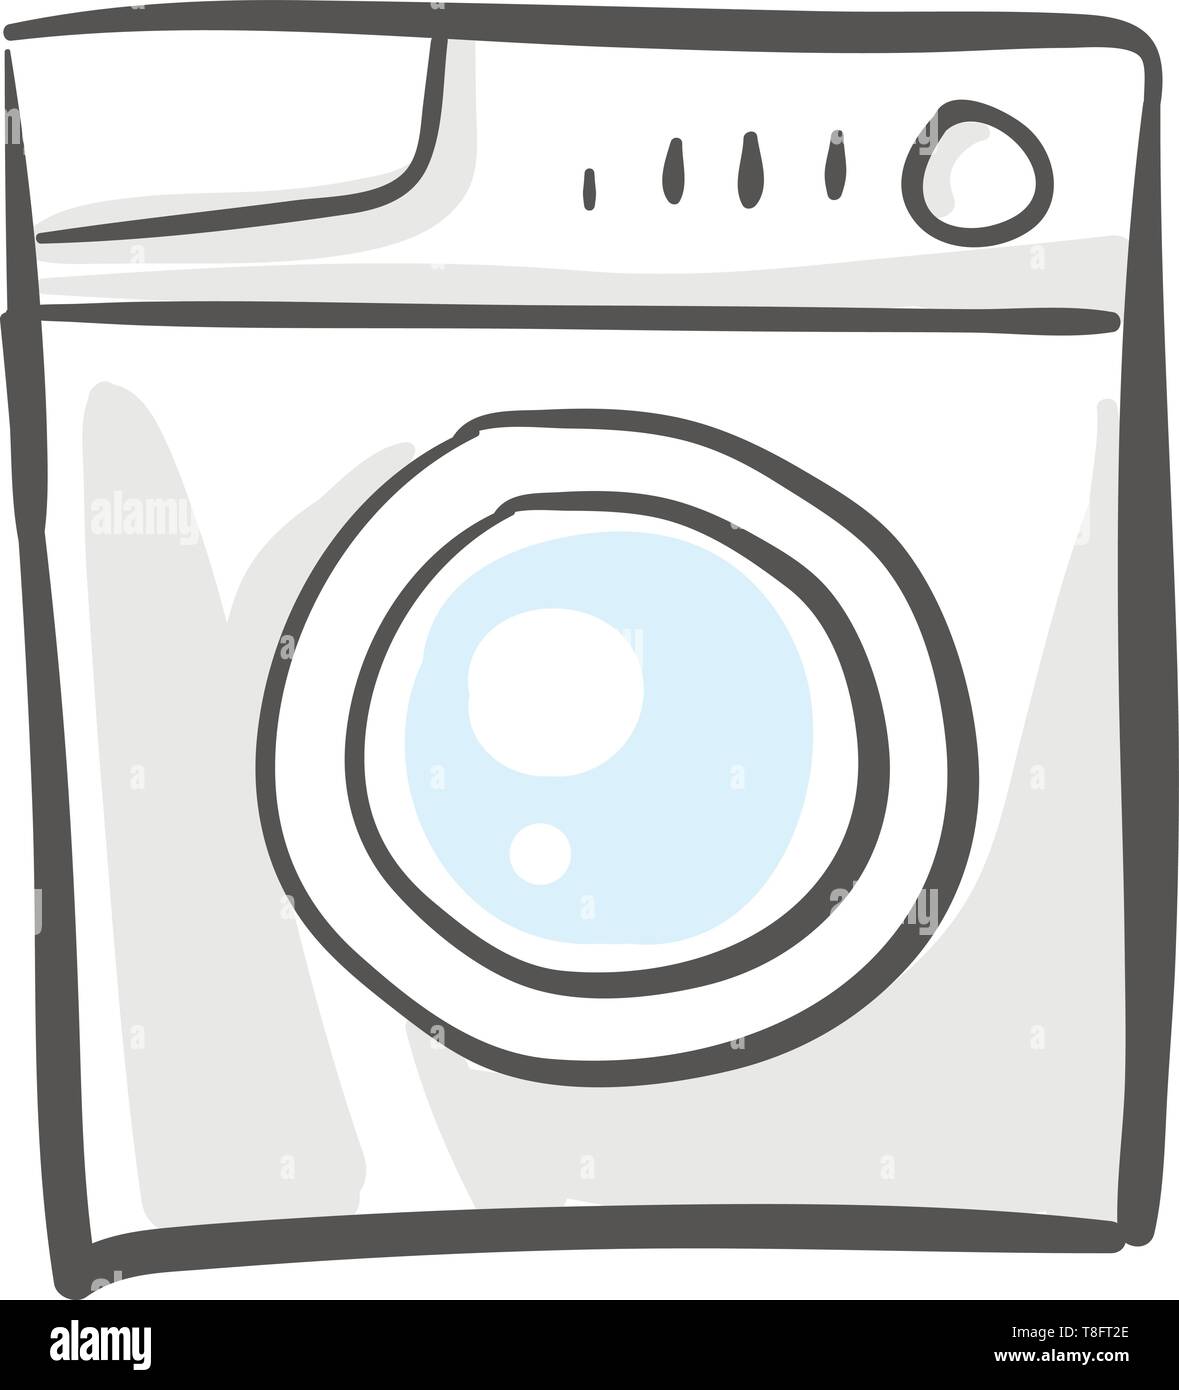 Waschmaschine, einen Haushalt elektronische Geräte mit speziellen Waschprogramme und drei Knöpfe zum Wäsche Waschen und Trocknen mit einem problemlosen Waschen durchführen Stock Vektor